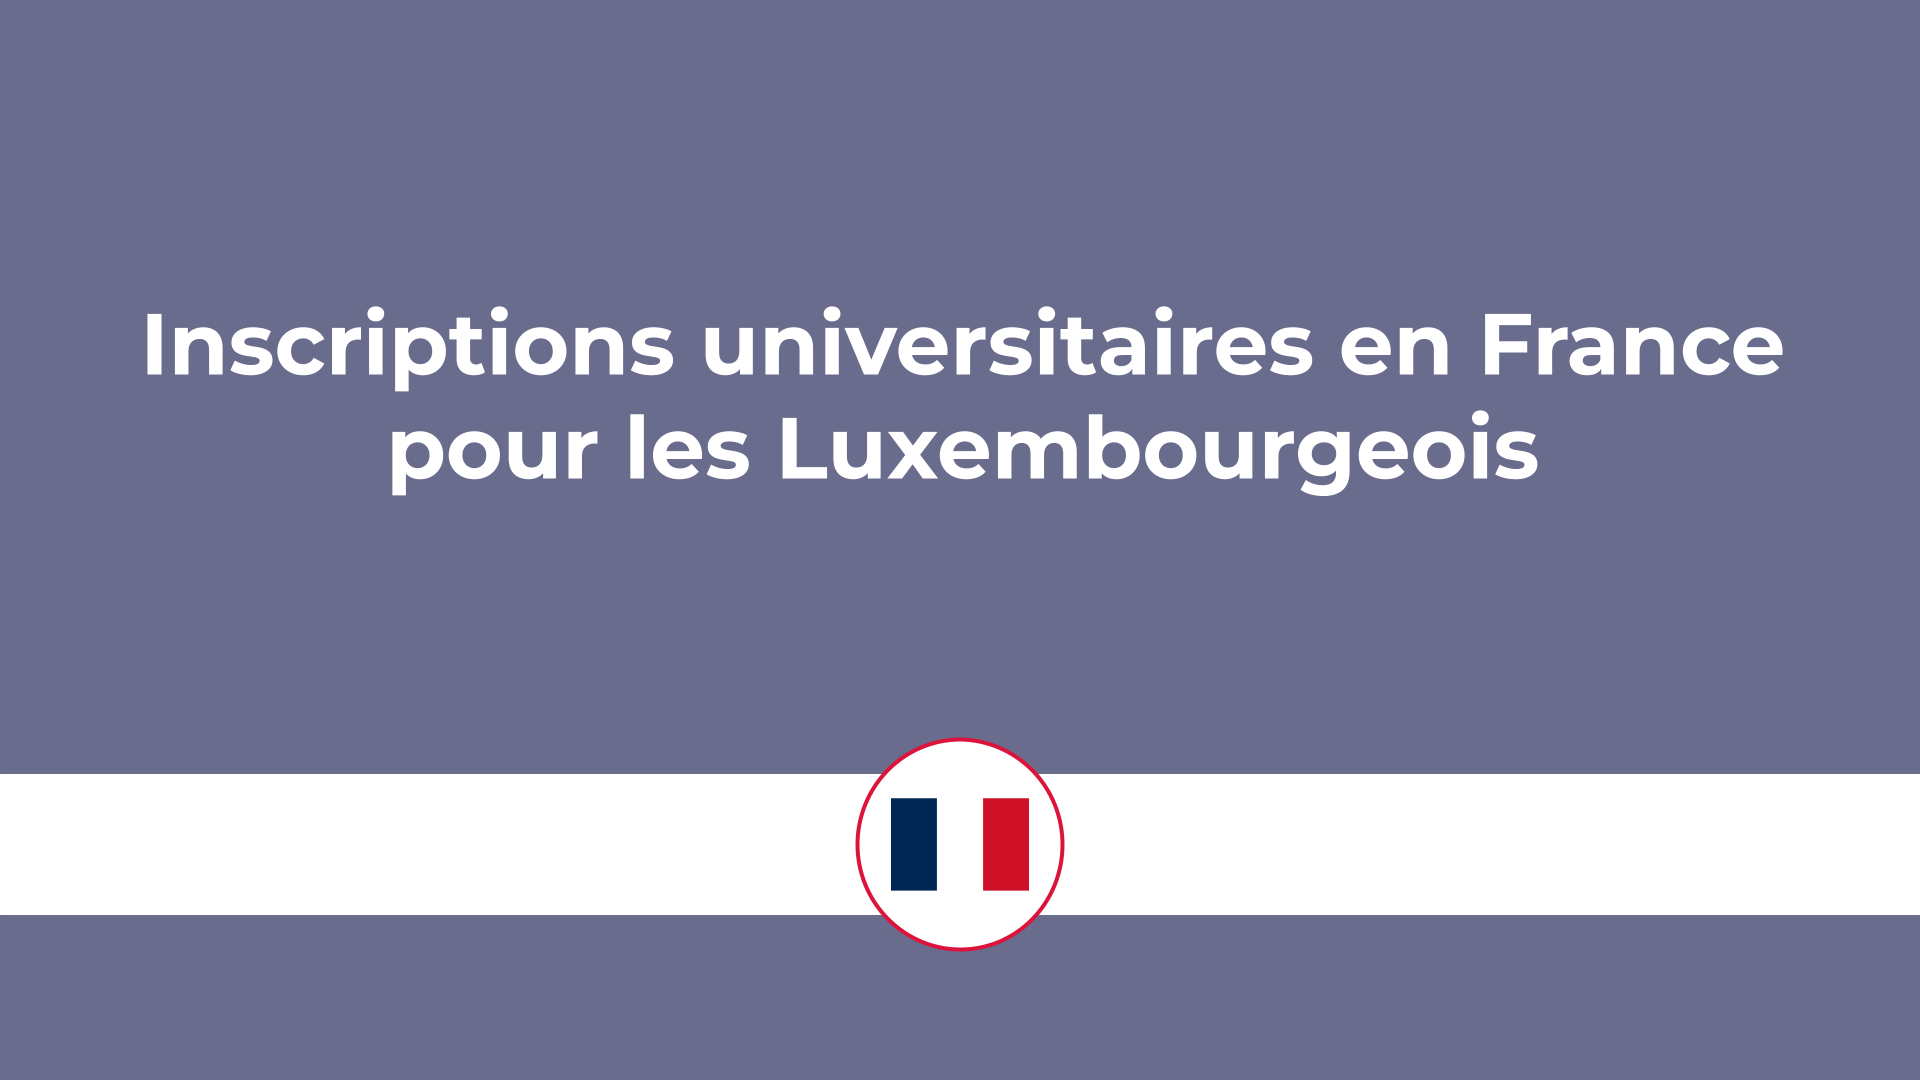 Inscriptions universitaires en France pour les Luxembourgeois